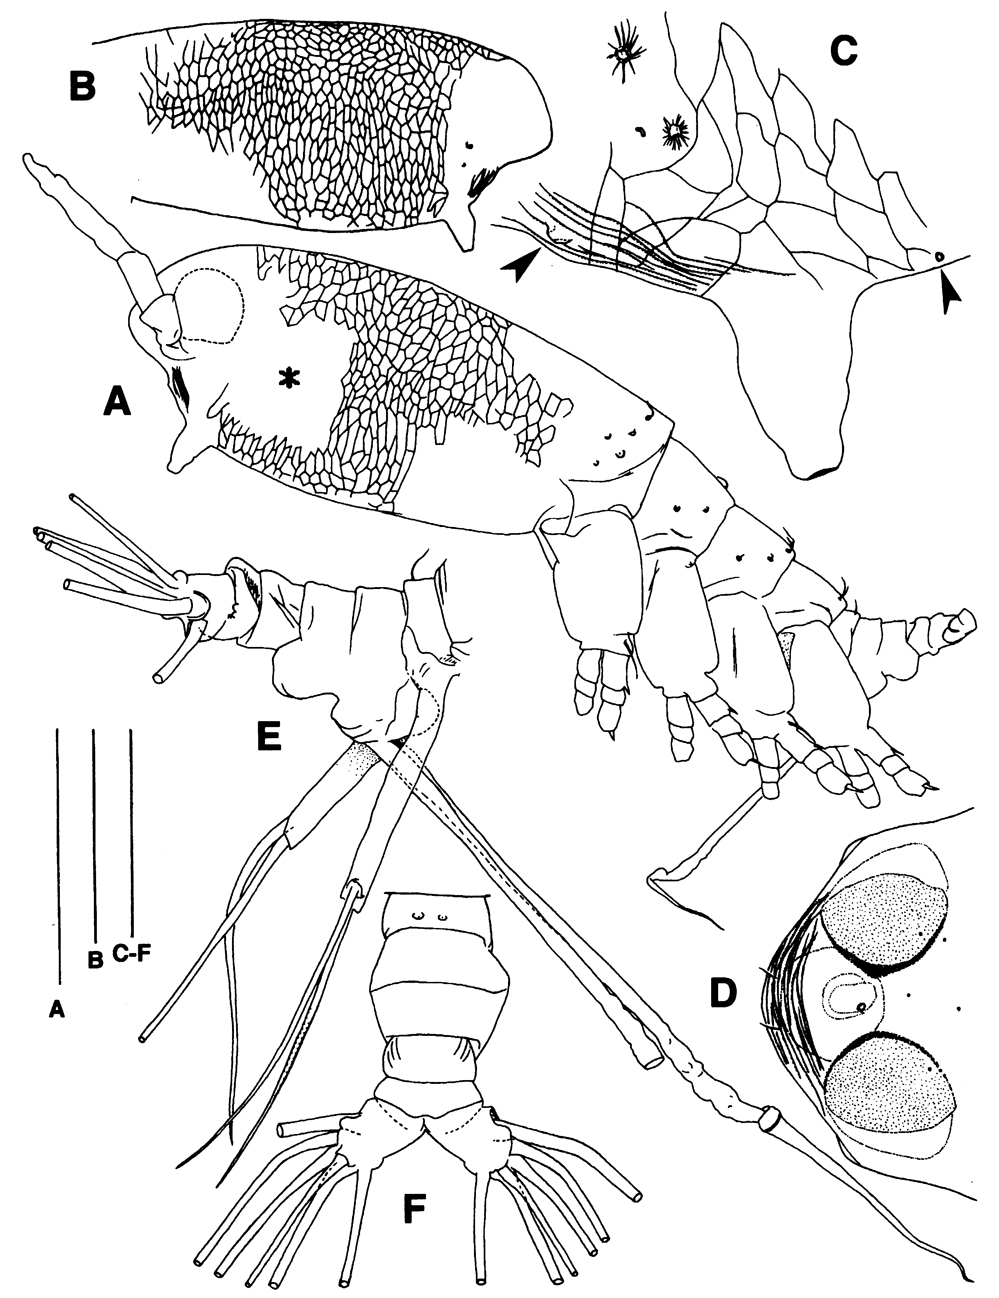 Espce Maemonstrilla simplex - Planche 1 de figures morphologiques